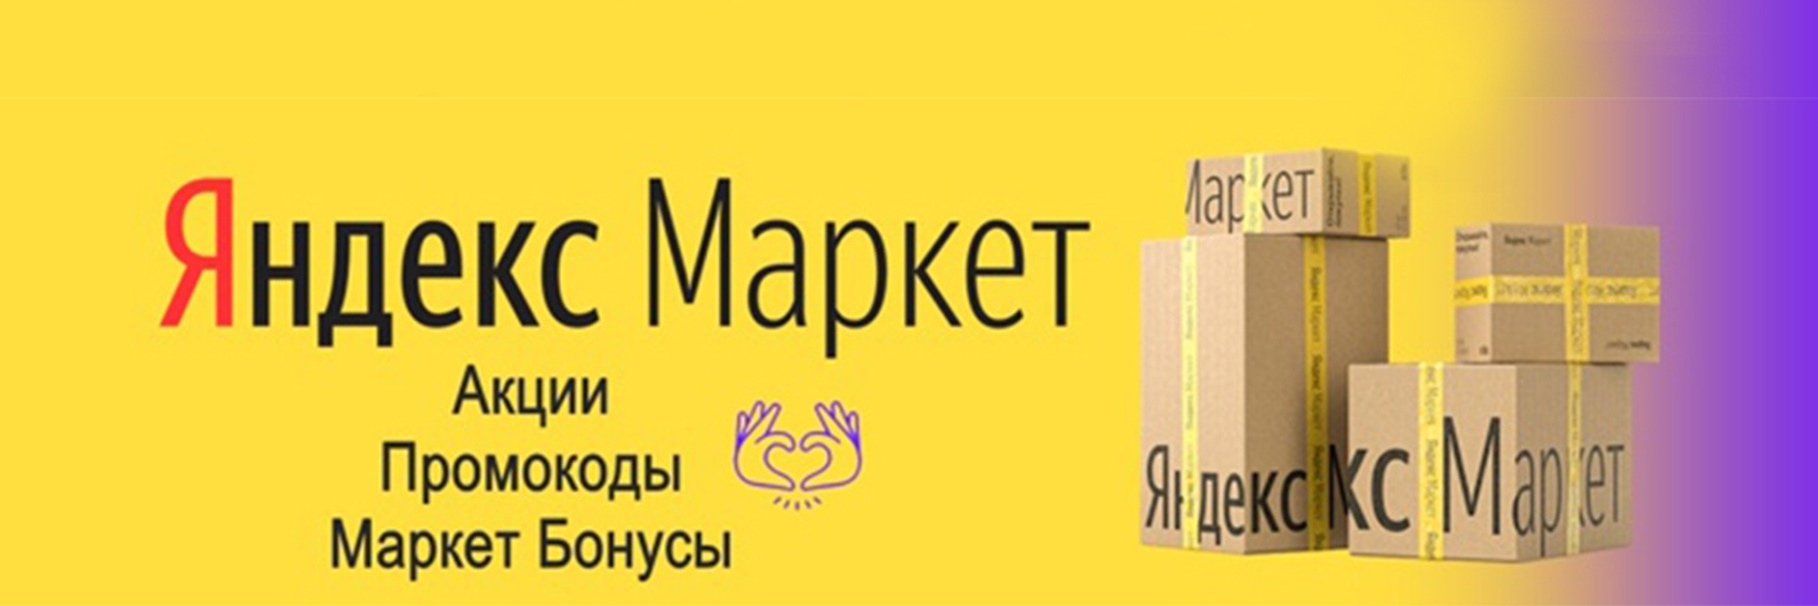 Используйте промокоды Яндекс Маркет и получайте выгоду при покупках!